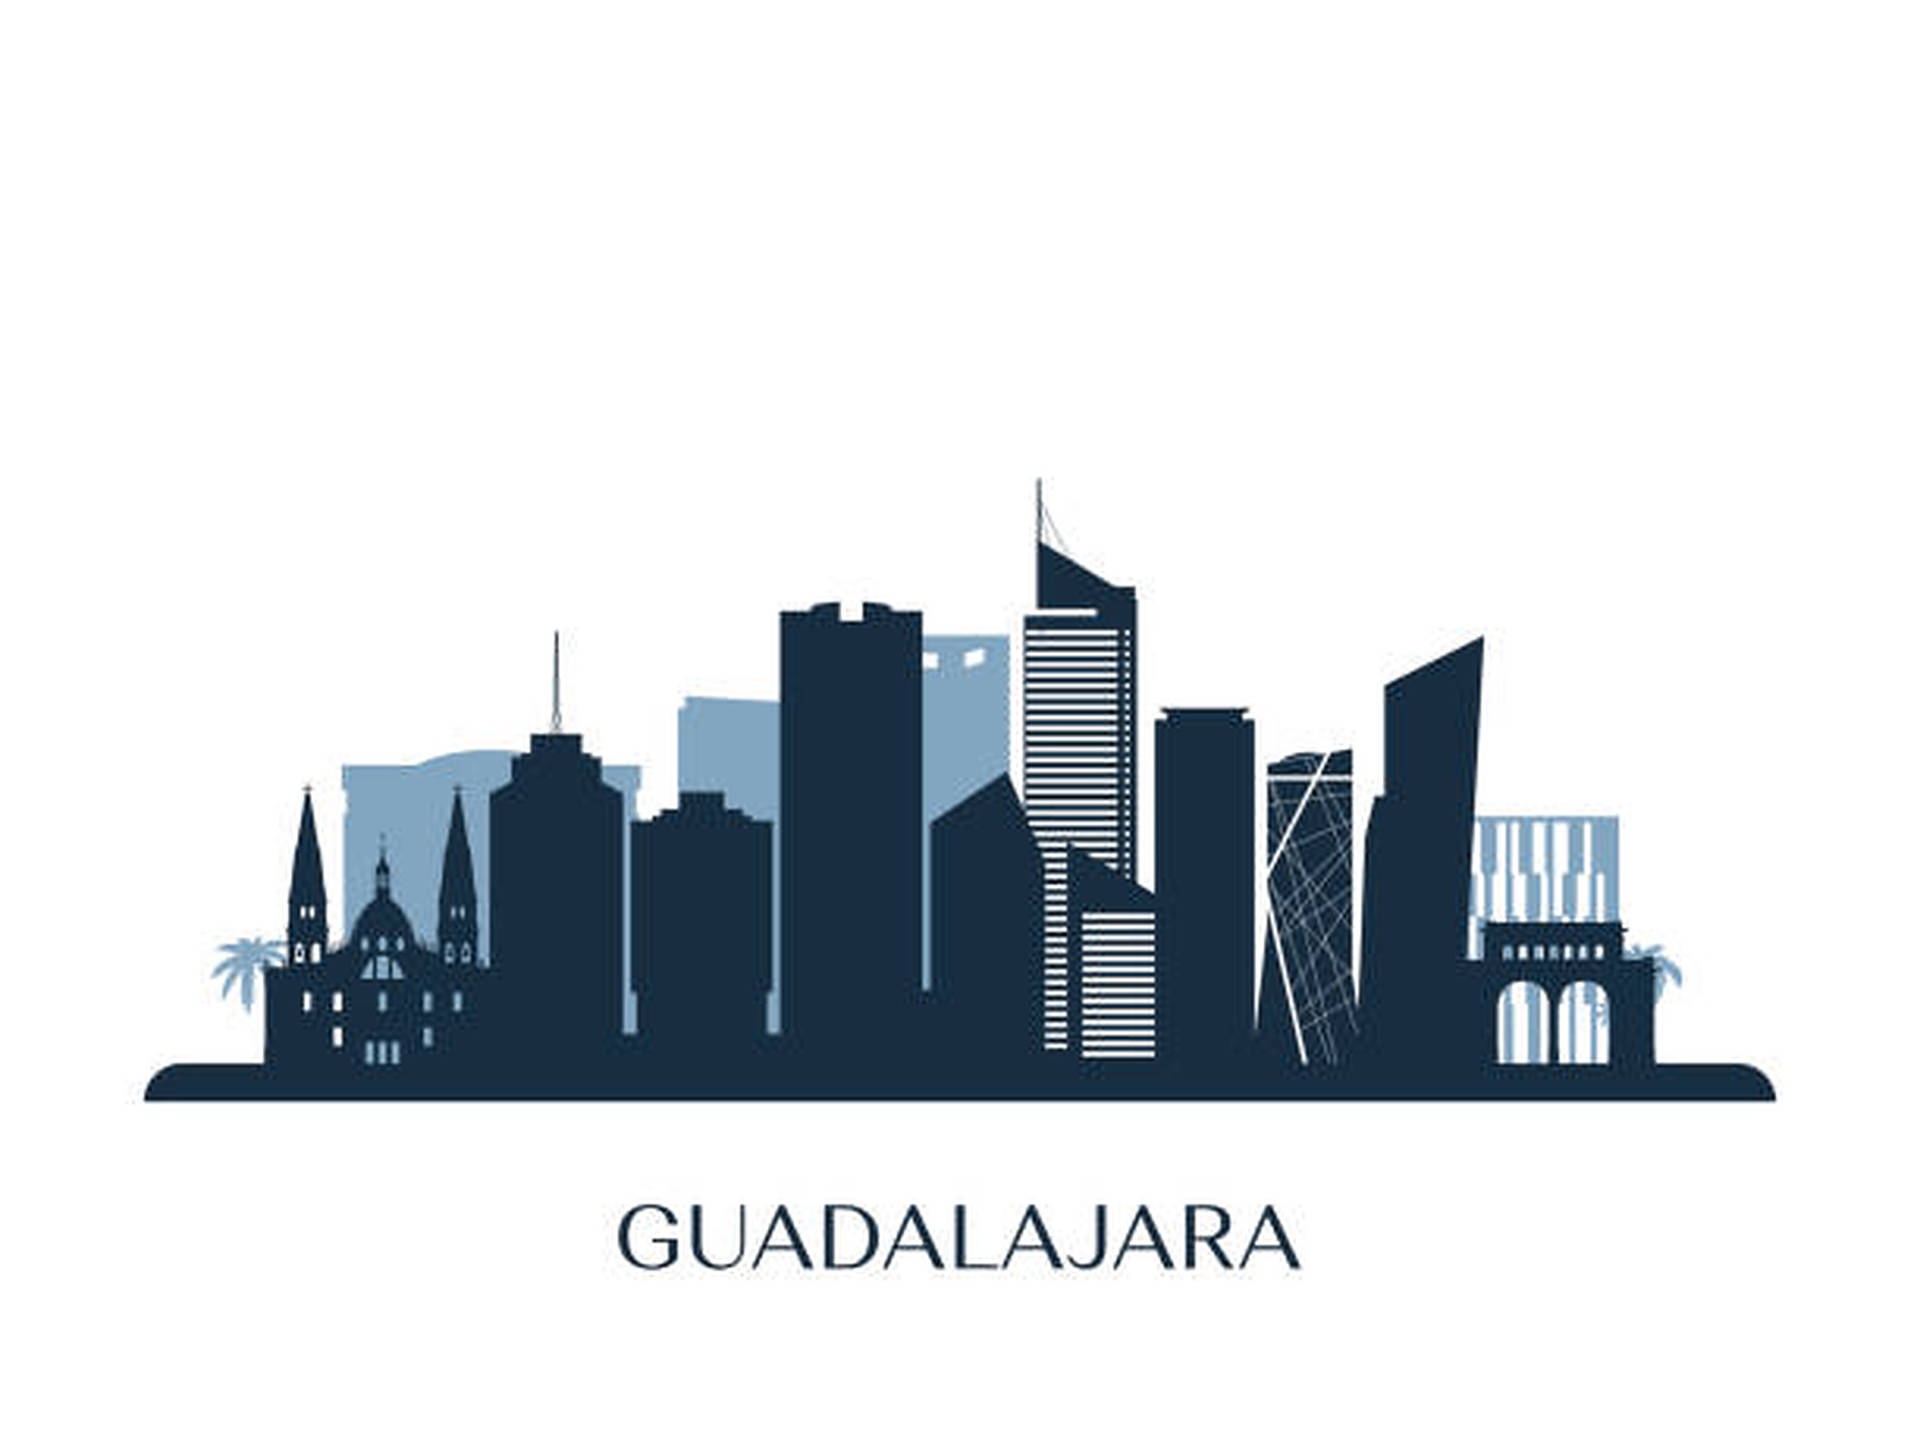 Guadalajara Monochromatic Silhouette